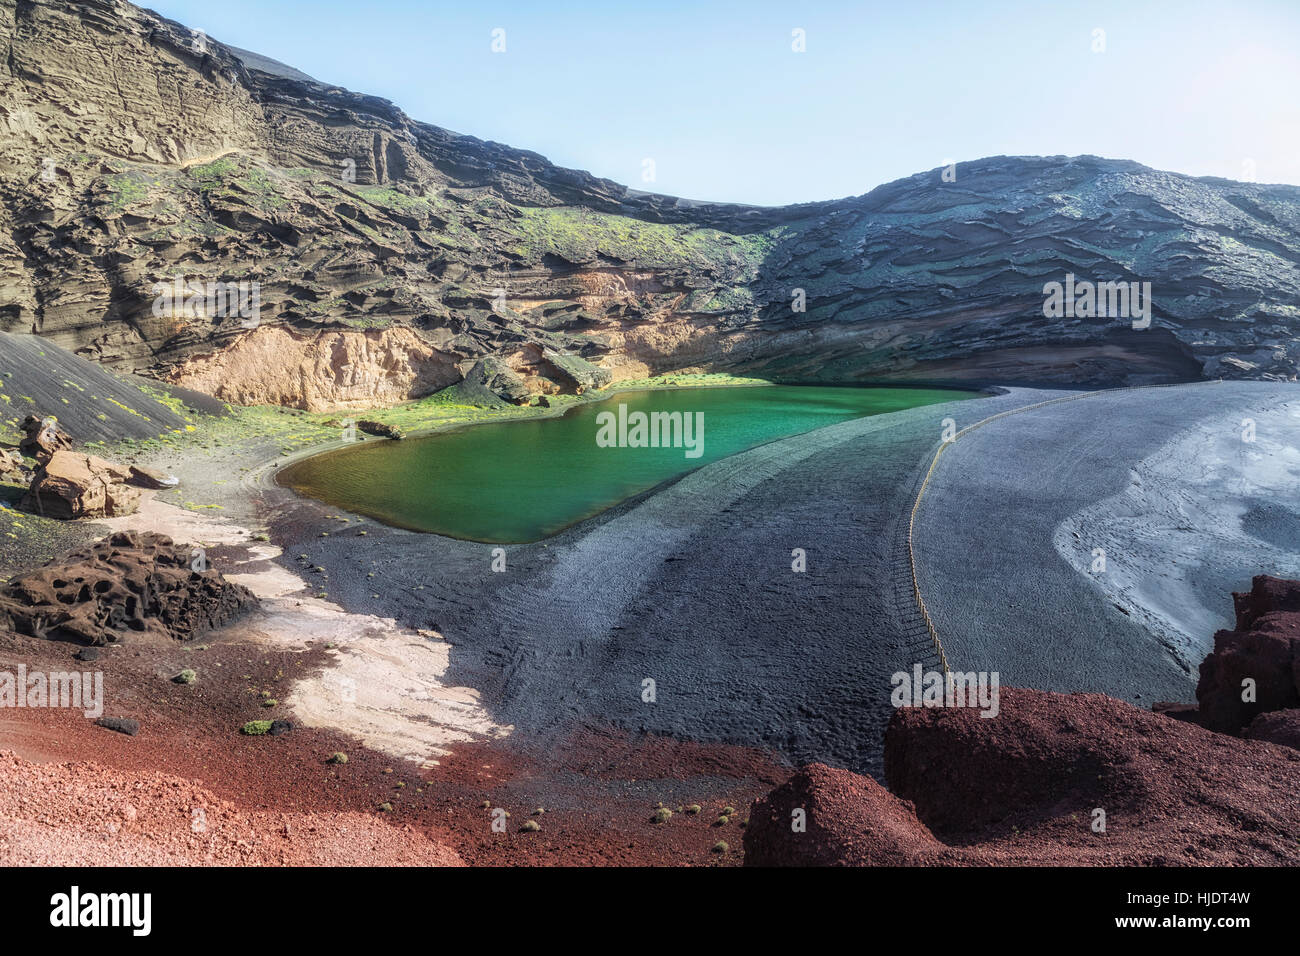 Lago Verde, El Golfo, Yaiza, Lanzarote, Canary Islands, Spain Stock Photo